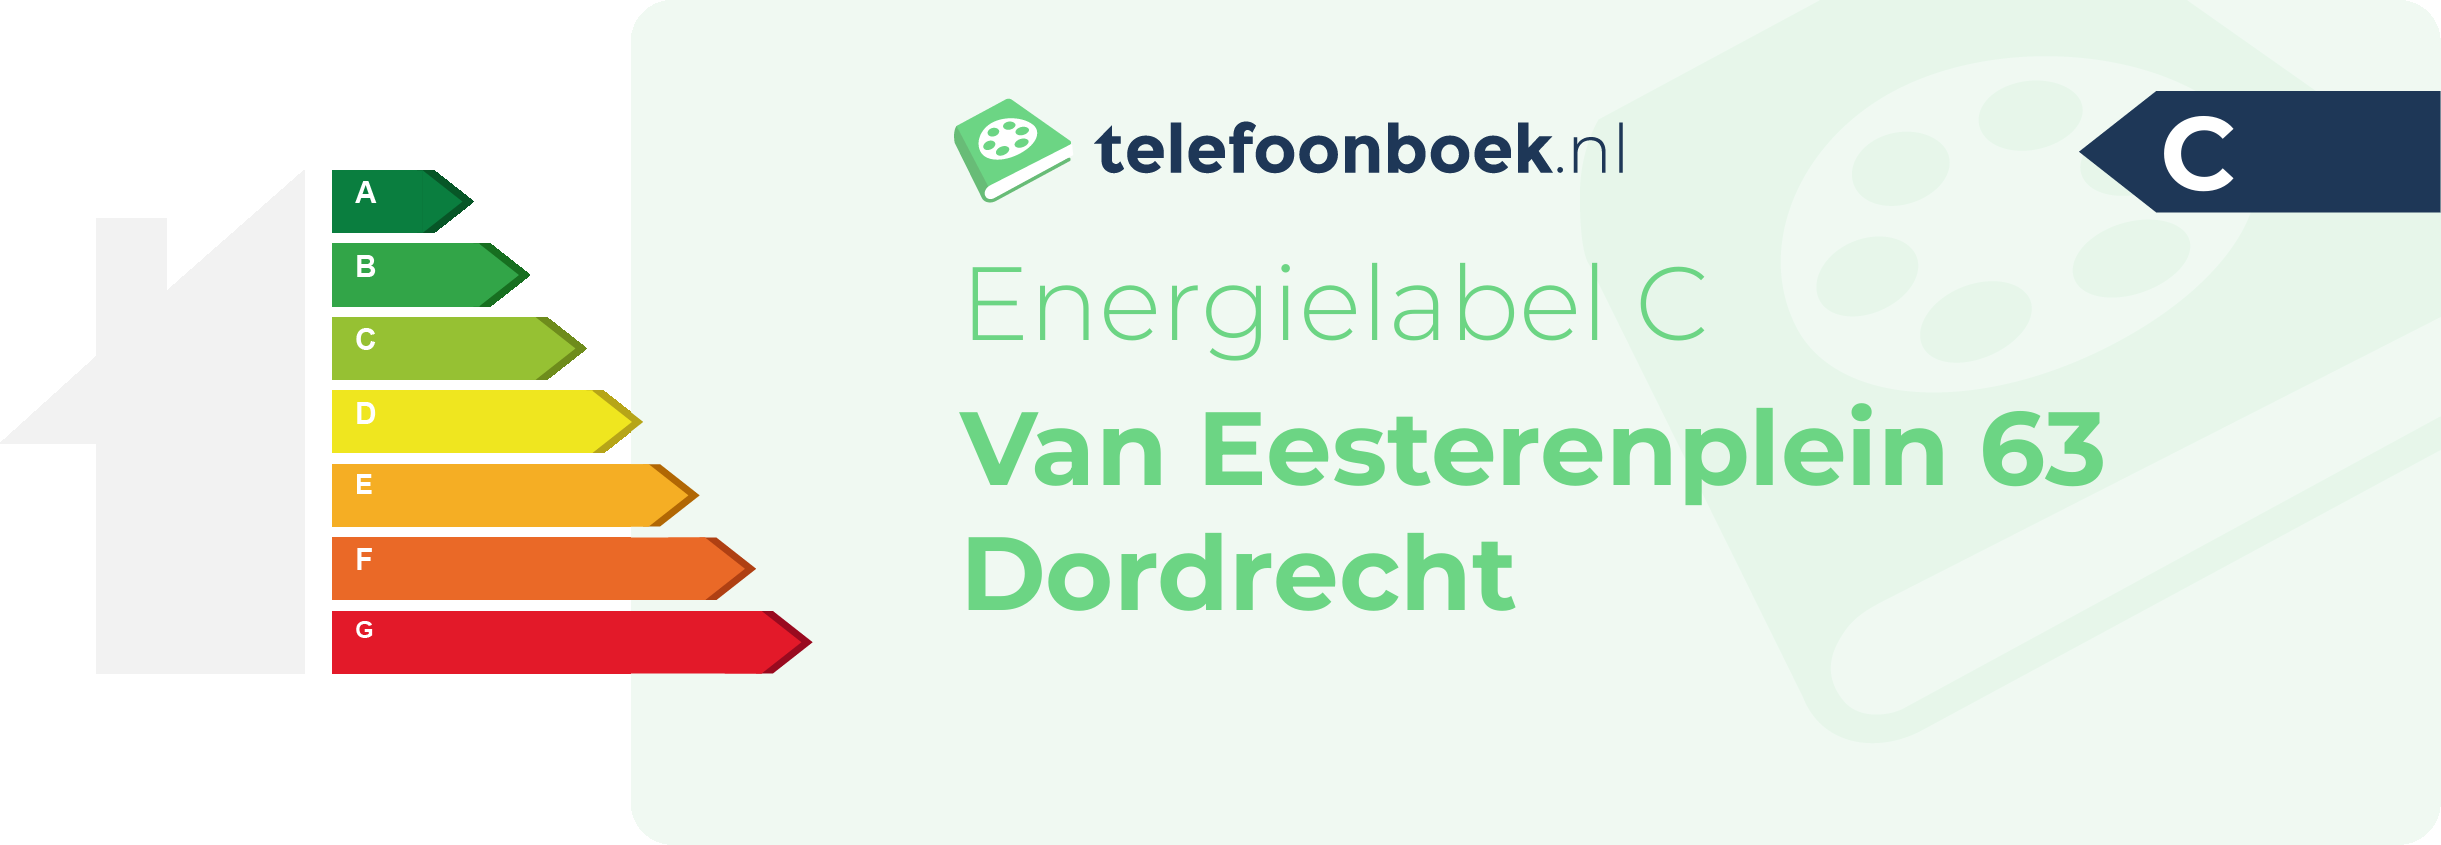 Energielabel Van Eesterenplein 63 Dordrecht